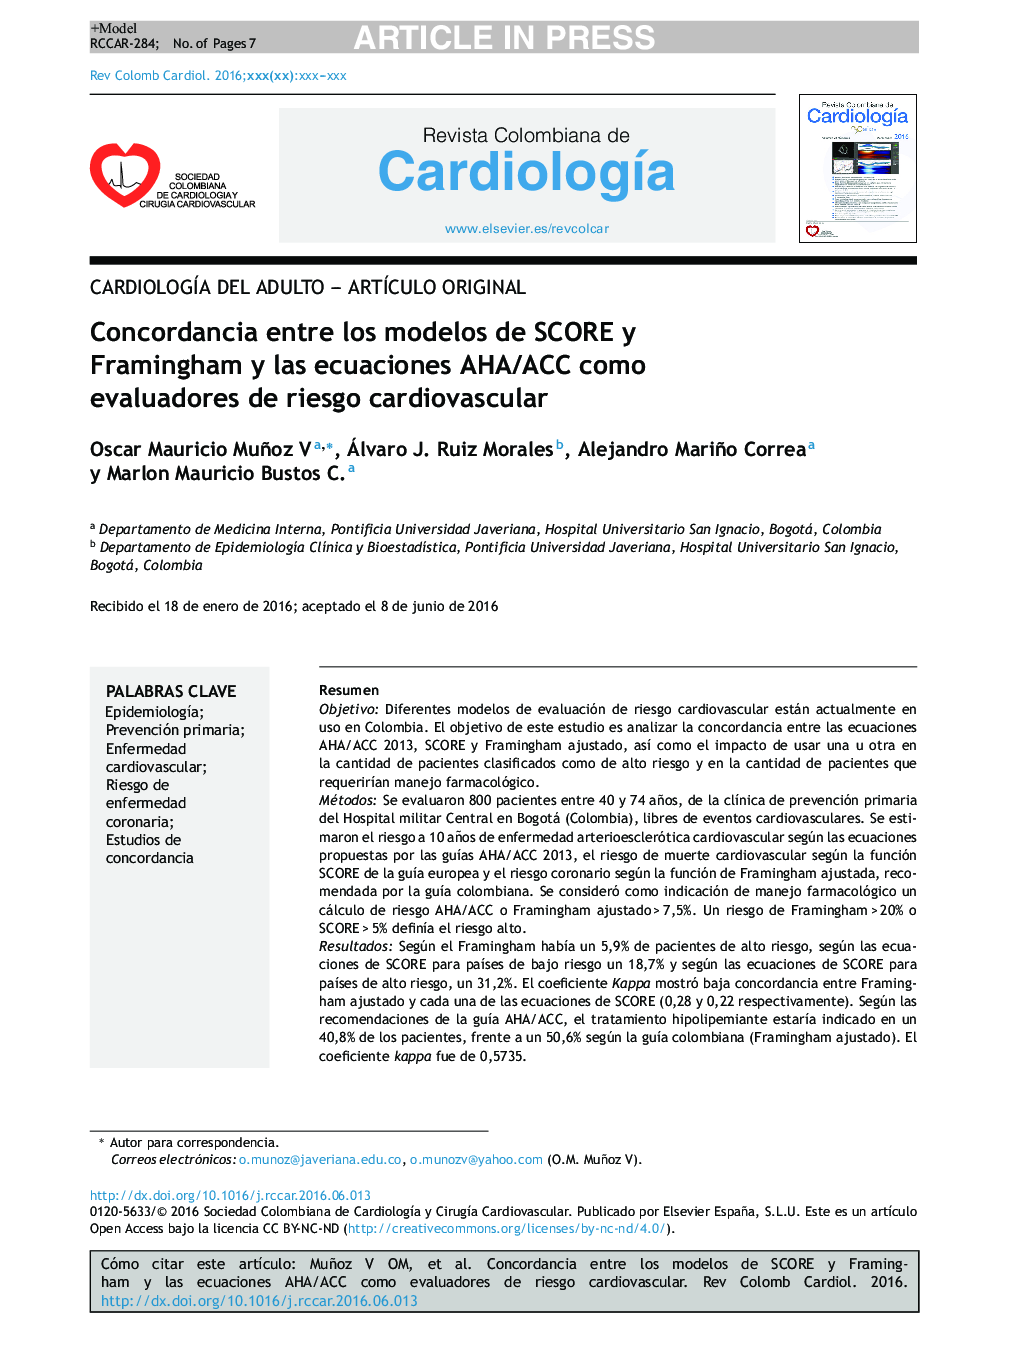 Concordancia entre los modelos de SCORE y Framingham y las ecuaciones AHA/ACC como evaluadores de riesgo cardiovascular